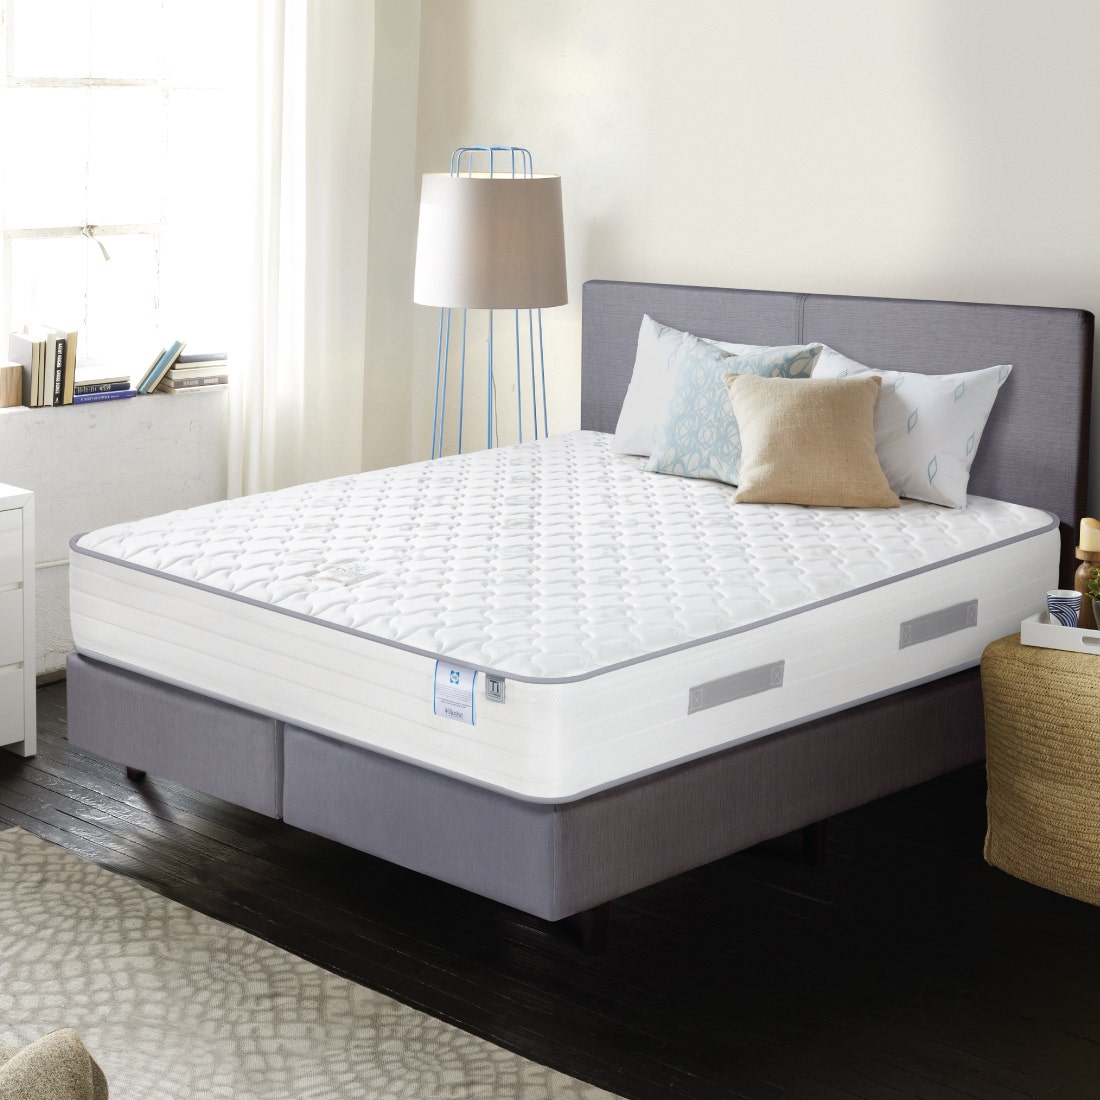 39011542-mattress-bedding-mattresses-spring-mattresses-31